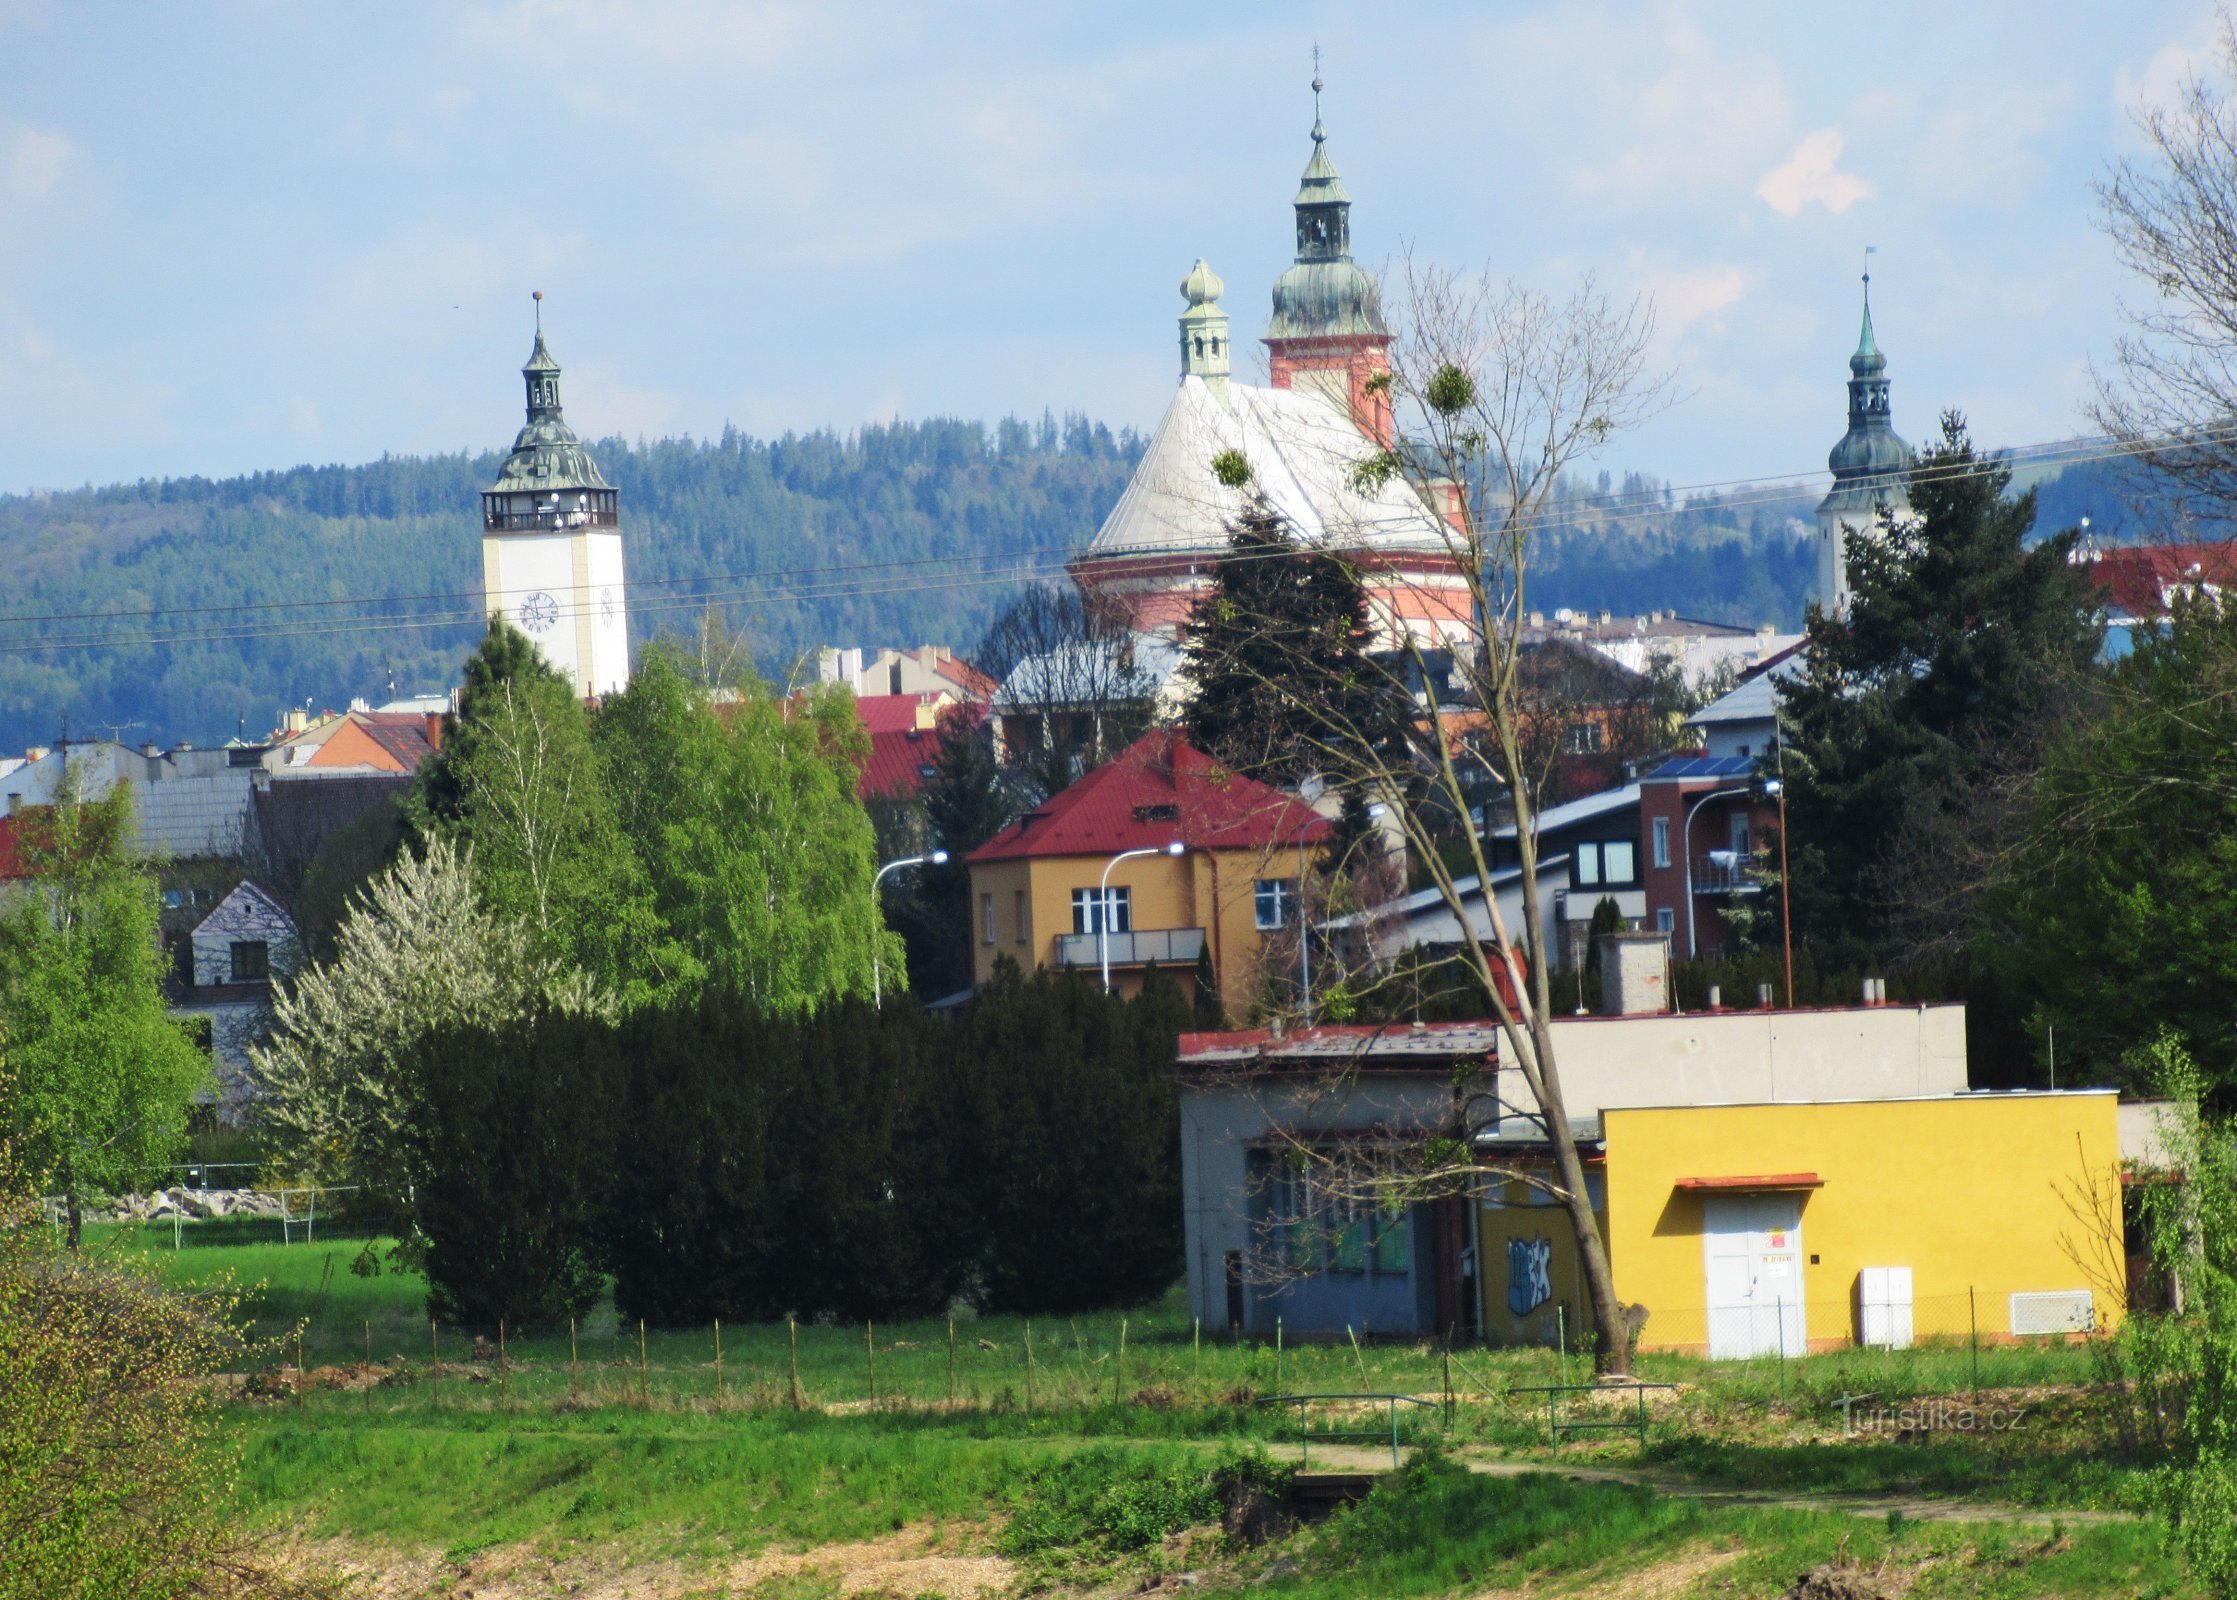 Trip from Teplice nad Bečvou to Hranice